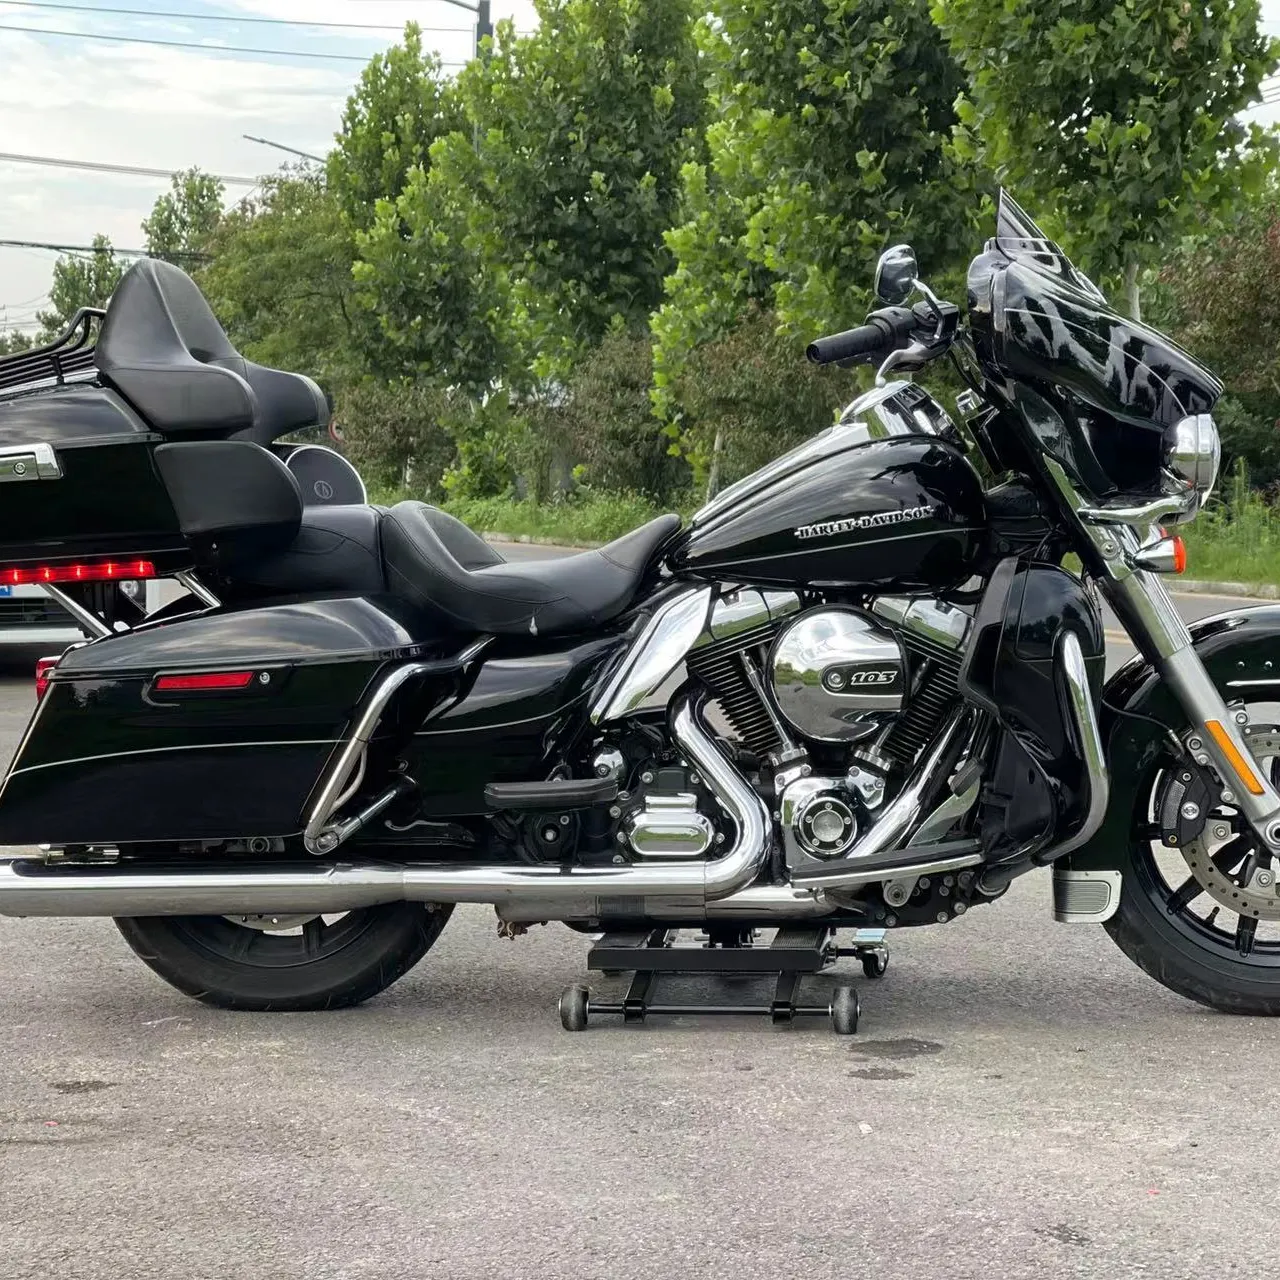 Cruiser motorcles Alpha 100cc бензиновый мотоцикл преемник Harley в 2019